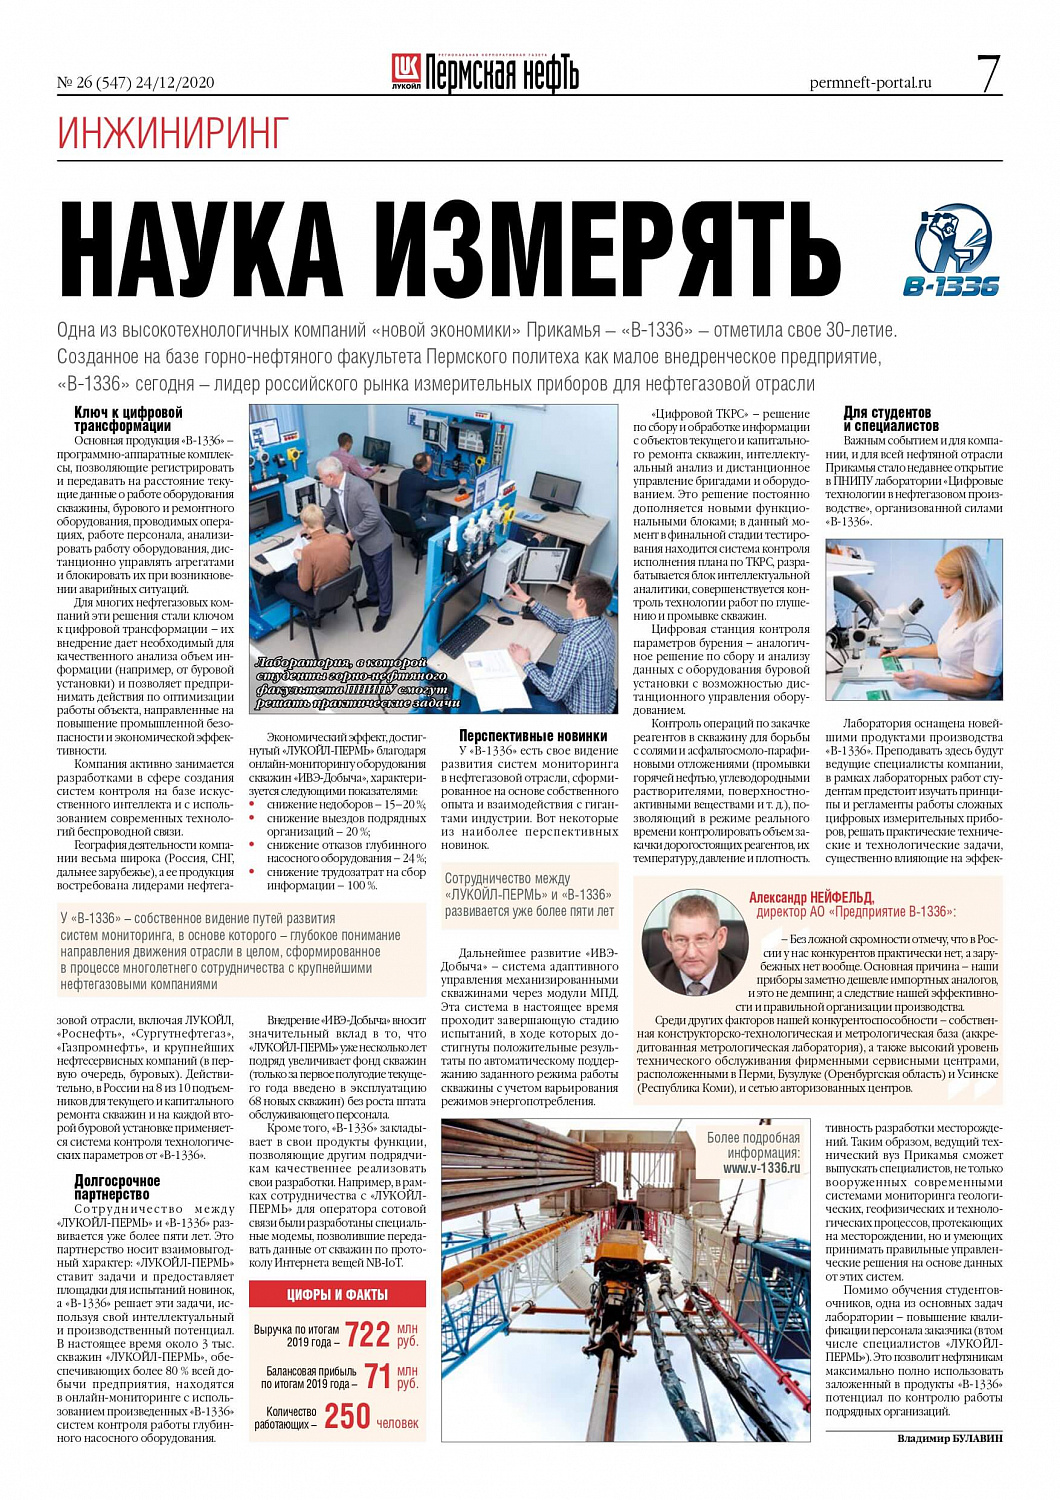 Публикация в новогоднем номере газеты «Пермская нефть».